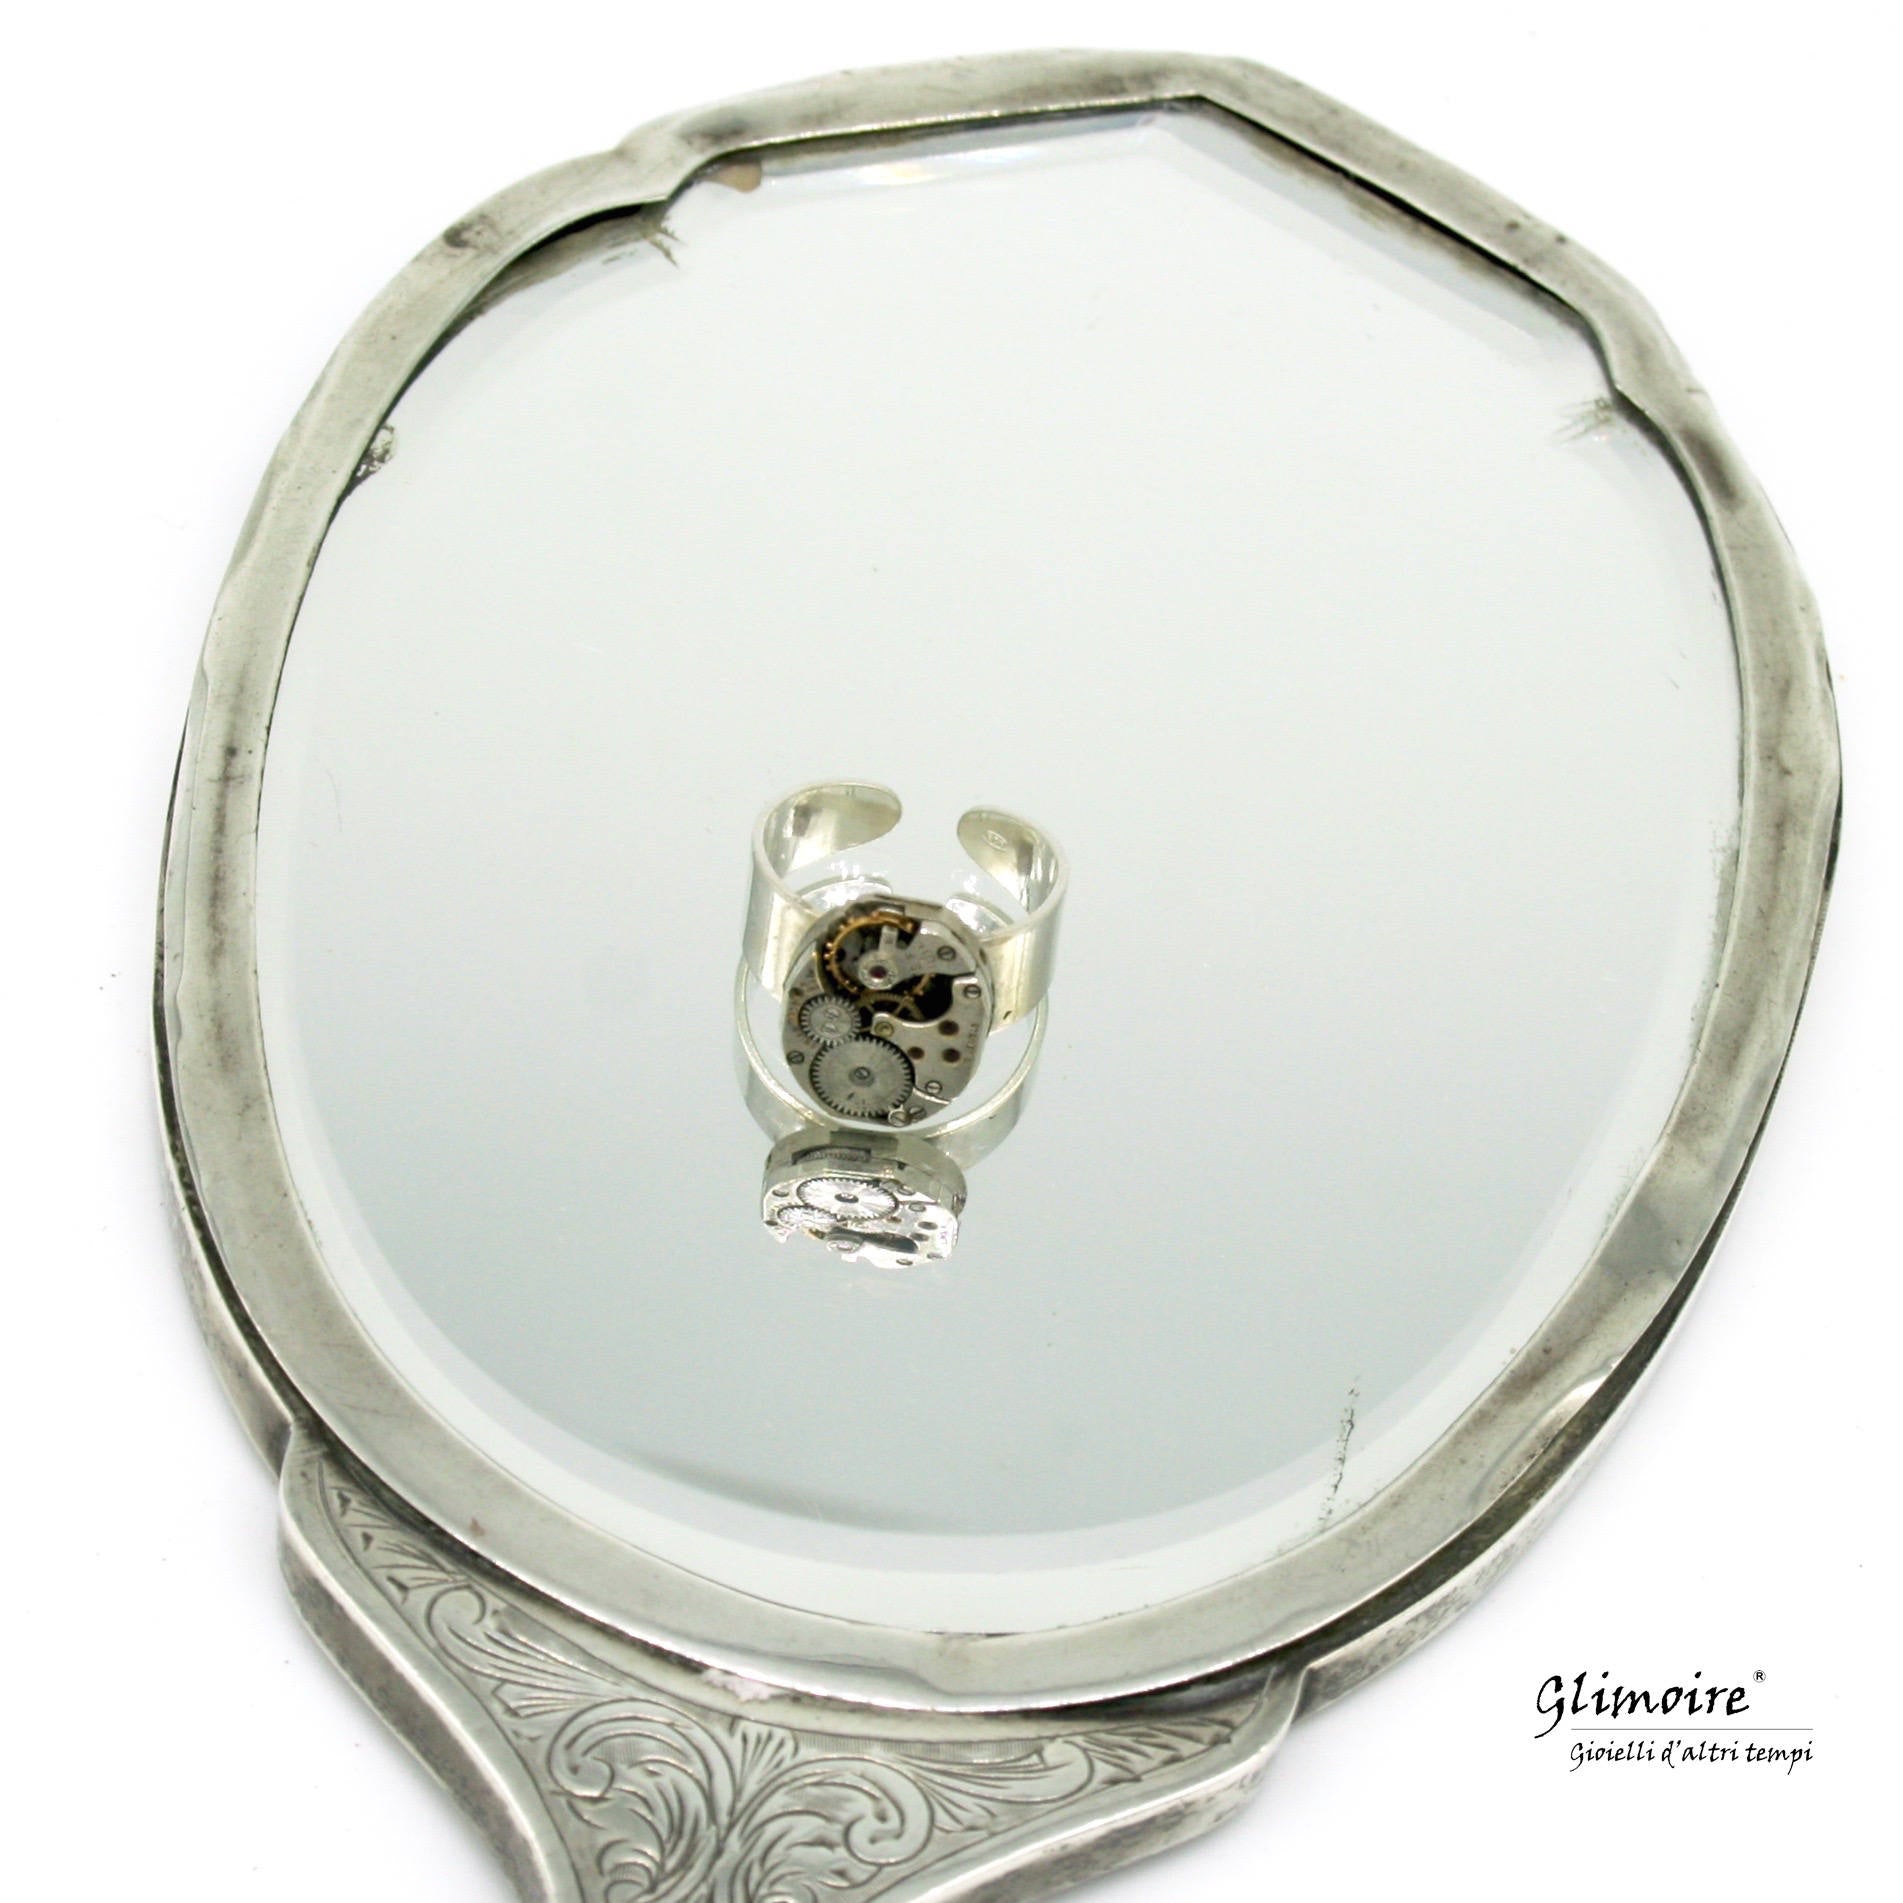 Anello con meccanismo di orologio d'epoca in argento 925 (base regolabile) art.36 - Glimoire